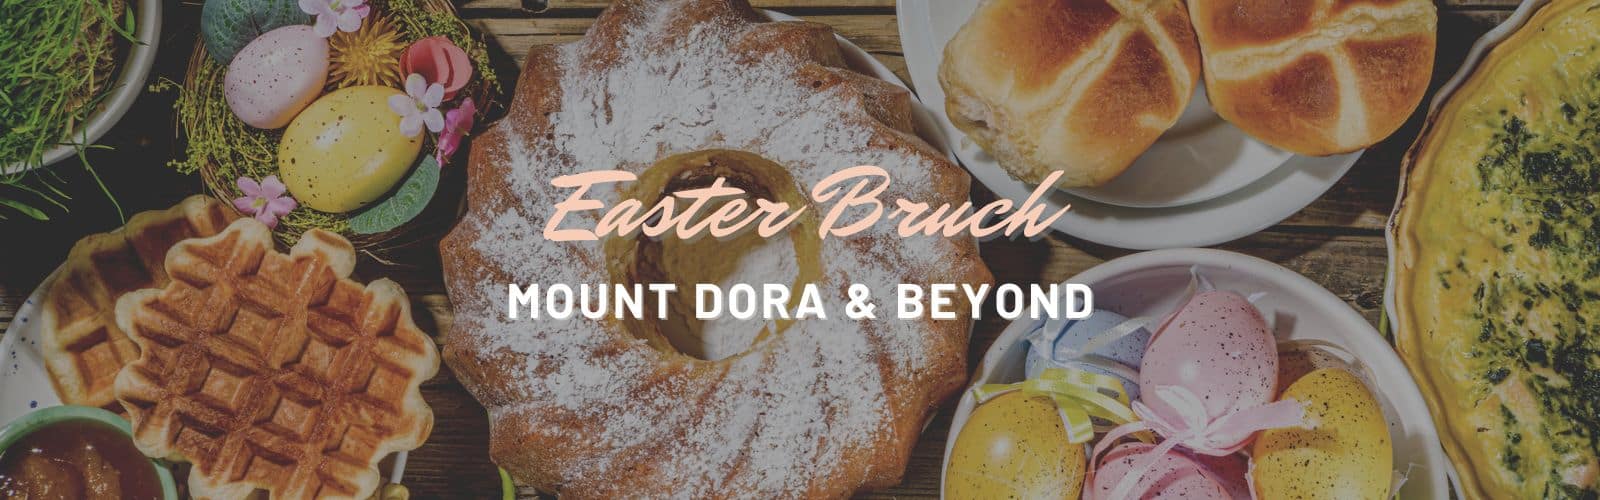 Easter Brunch Mount Dora